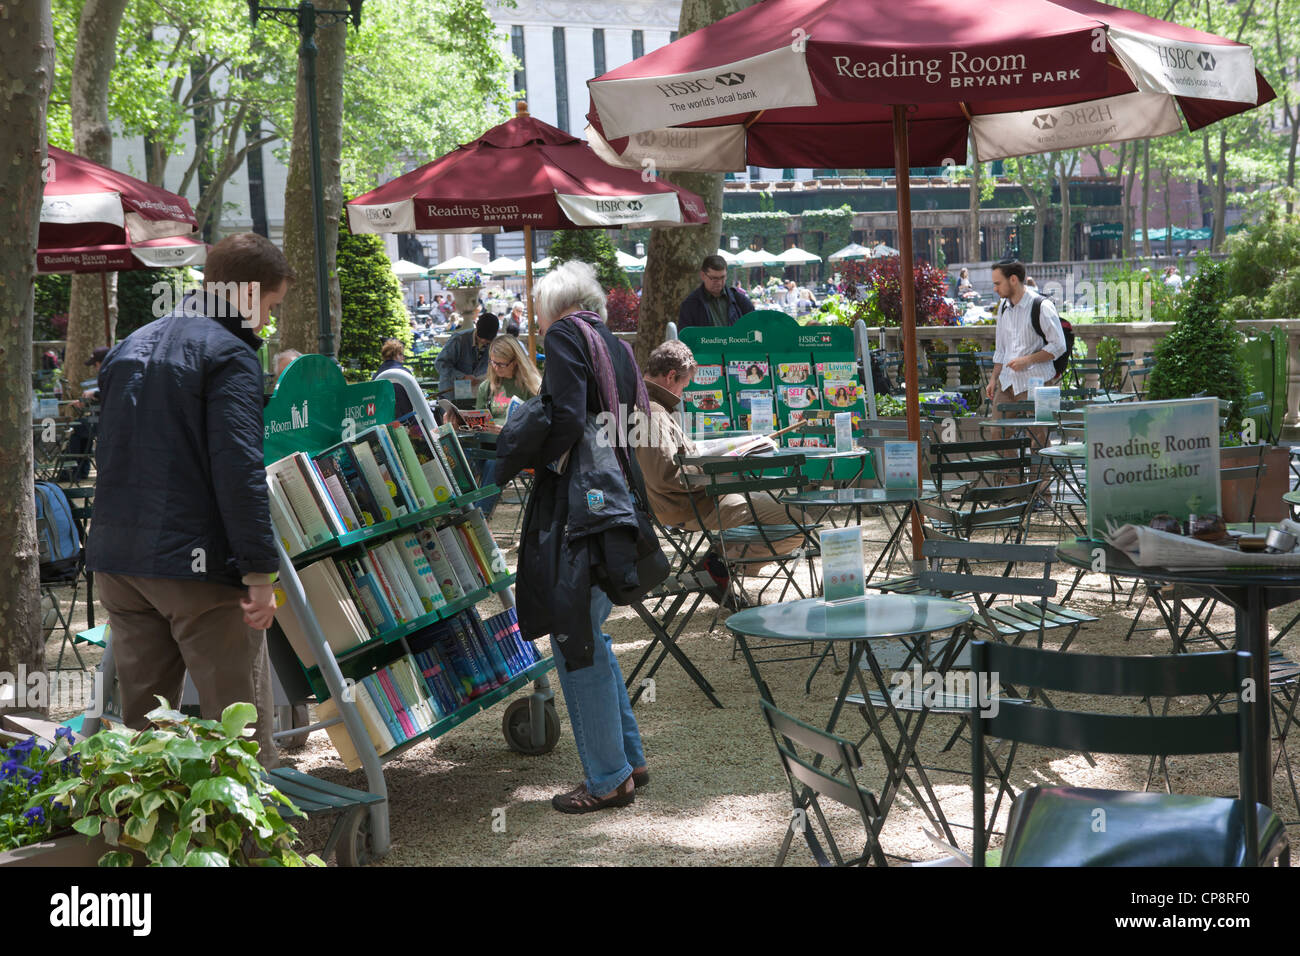 Les gens parcourir la sélection de livres sur les chariots à la Bryant Park salle de lecture, une bibliothèque de plein air dans la ville de New York. Banque D'Images